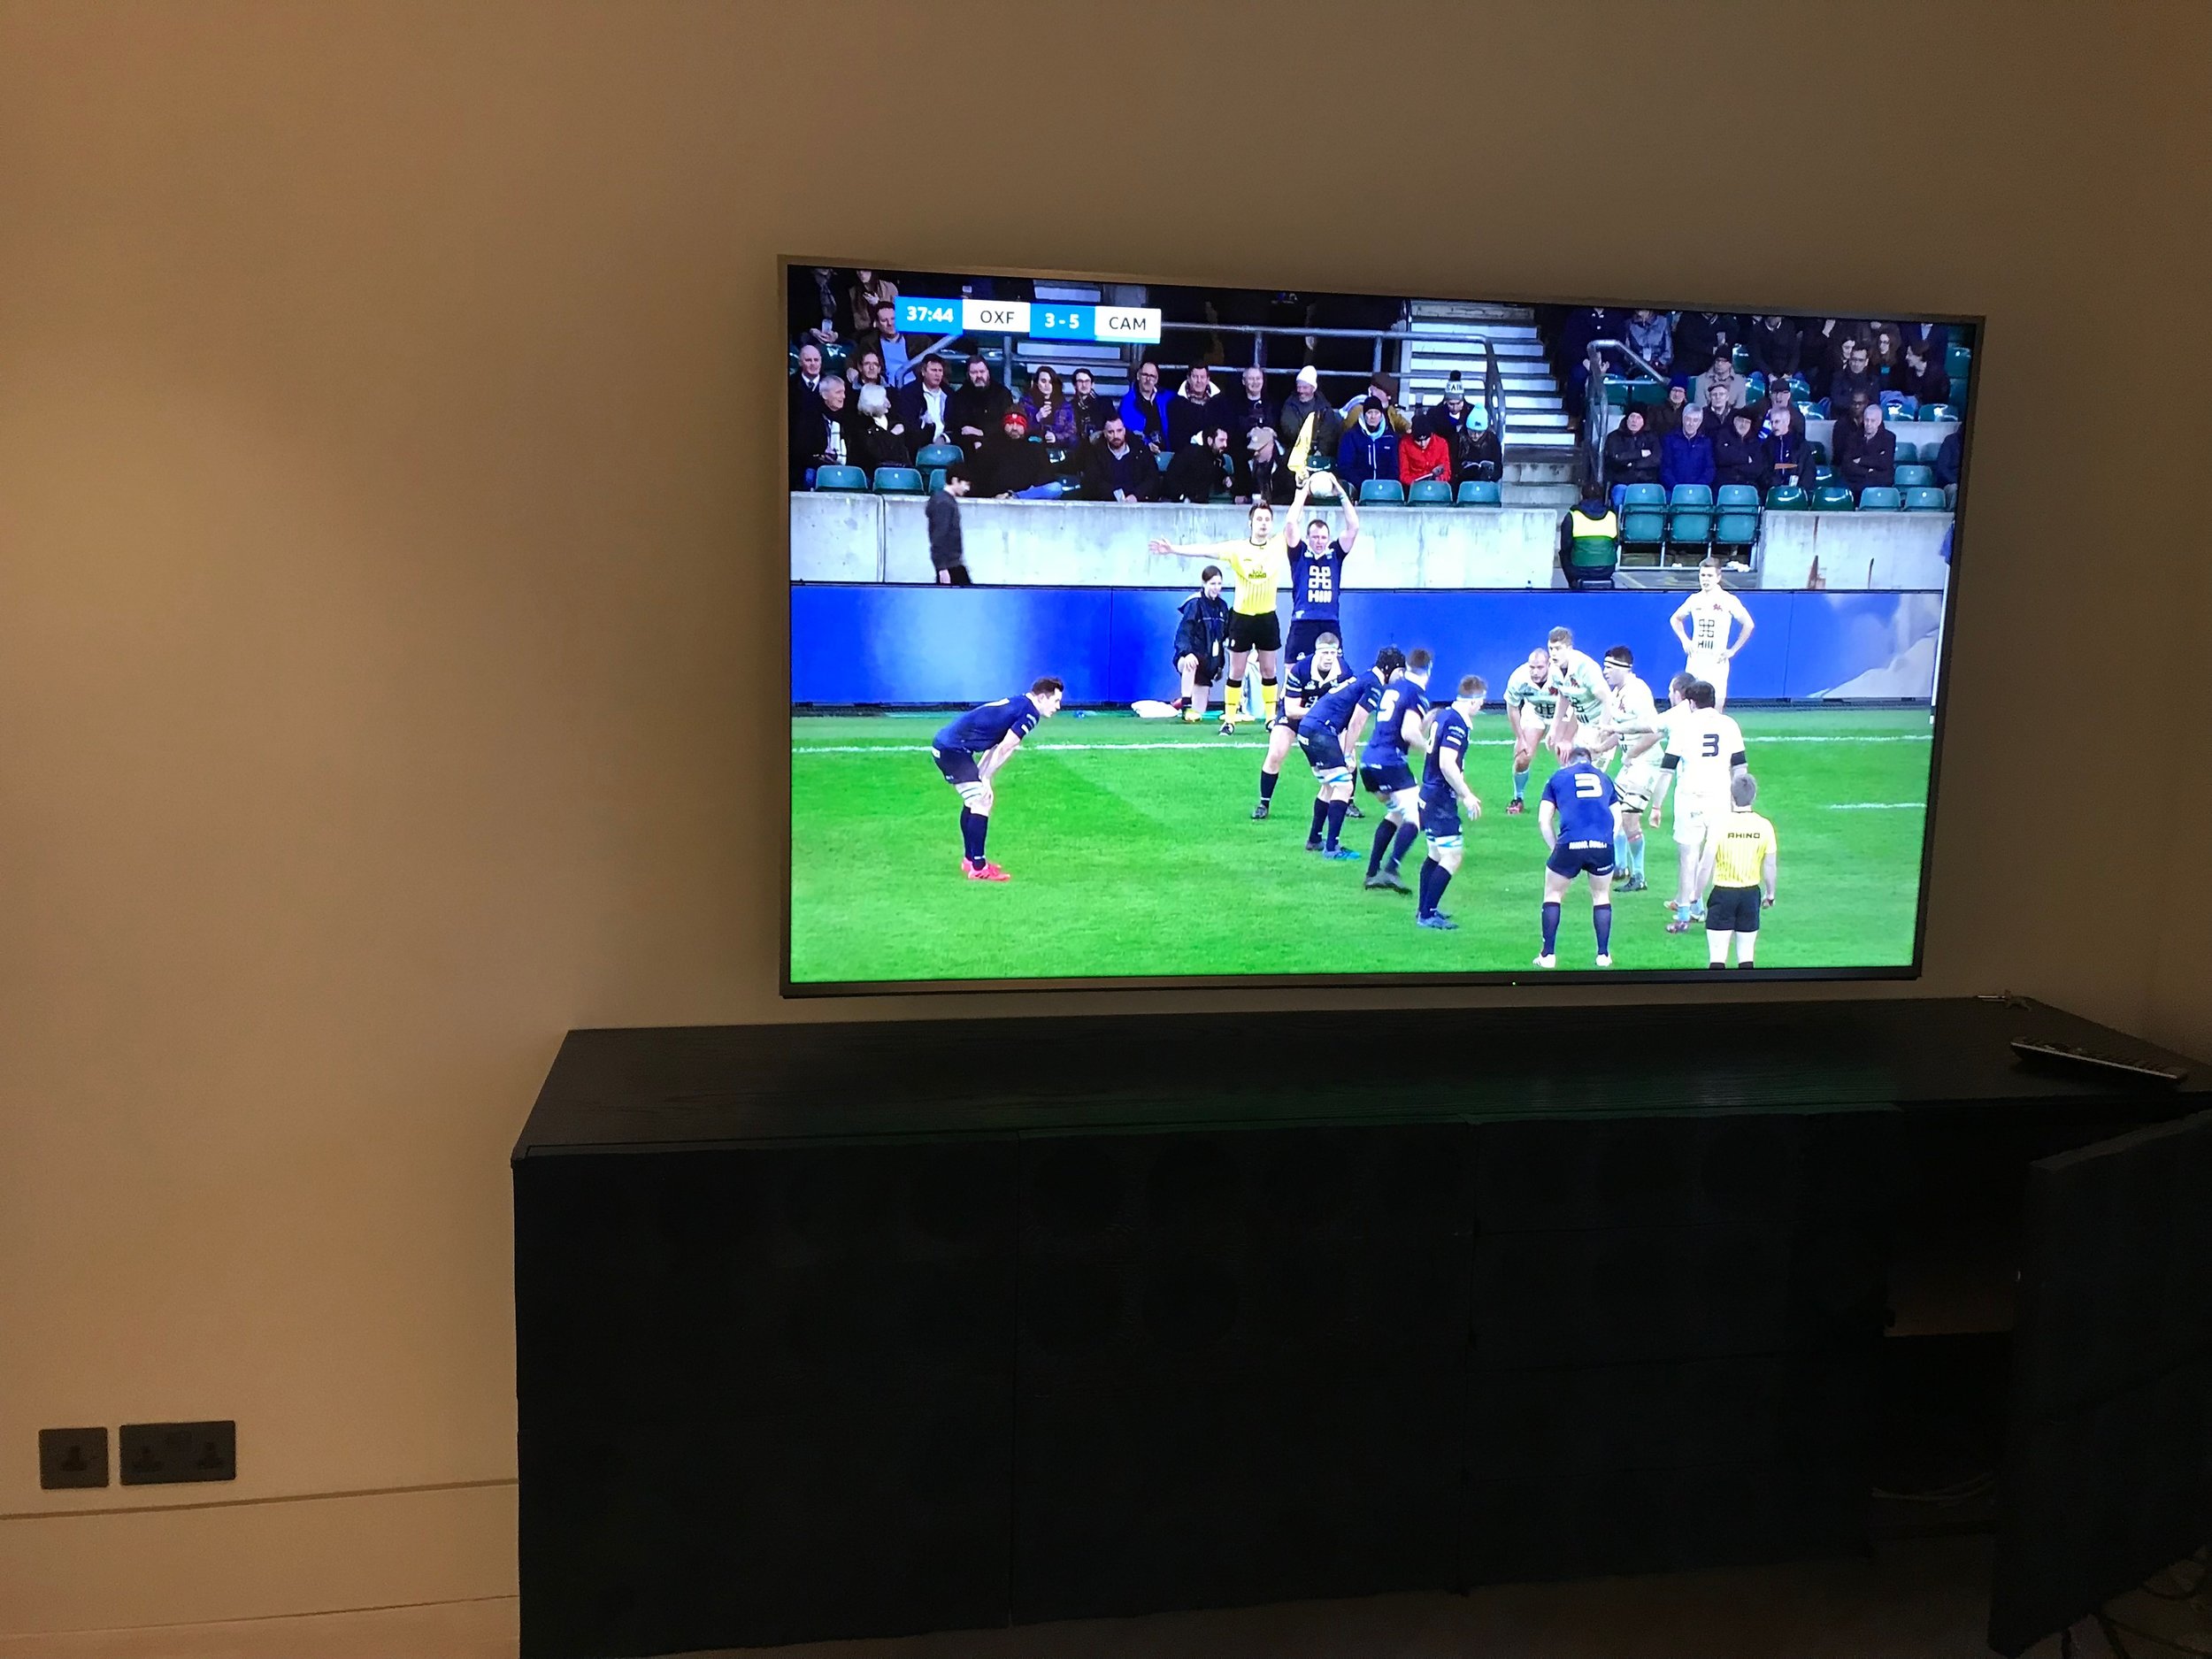 Wall mounted smart TV